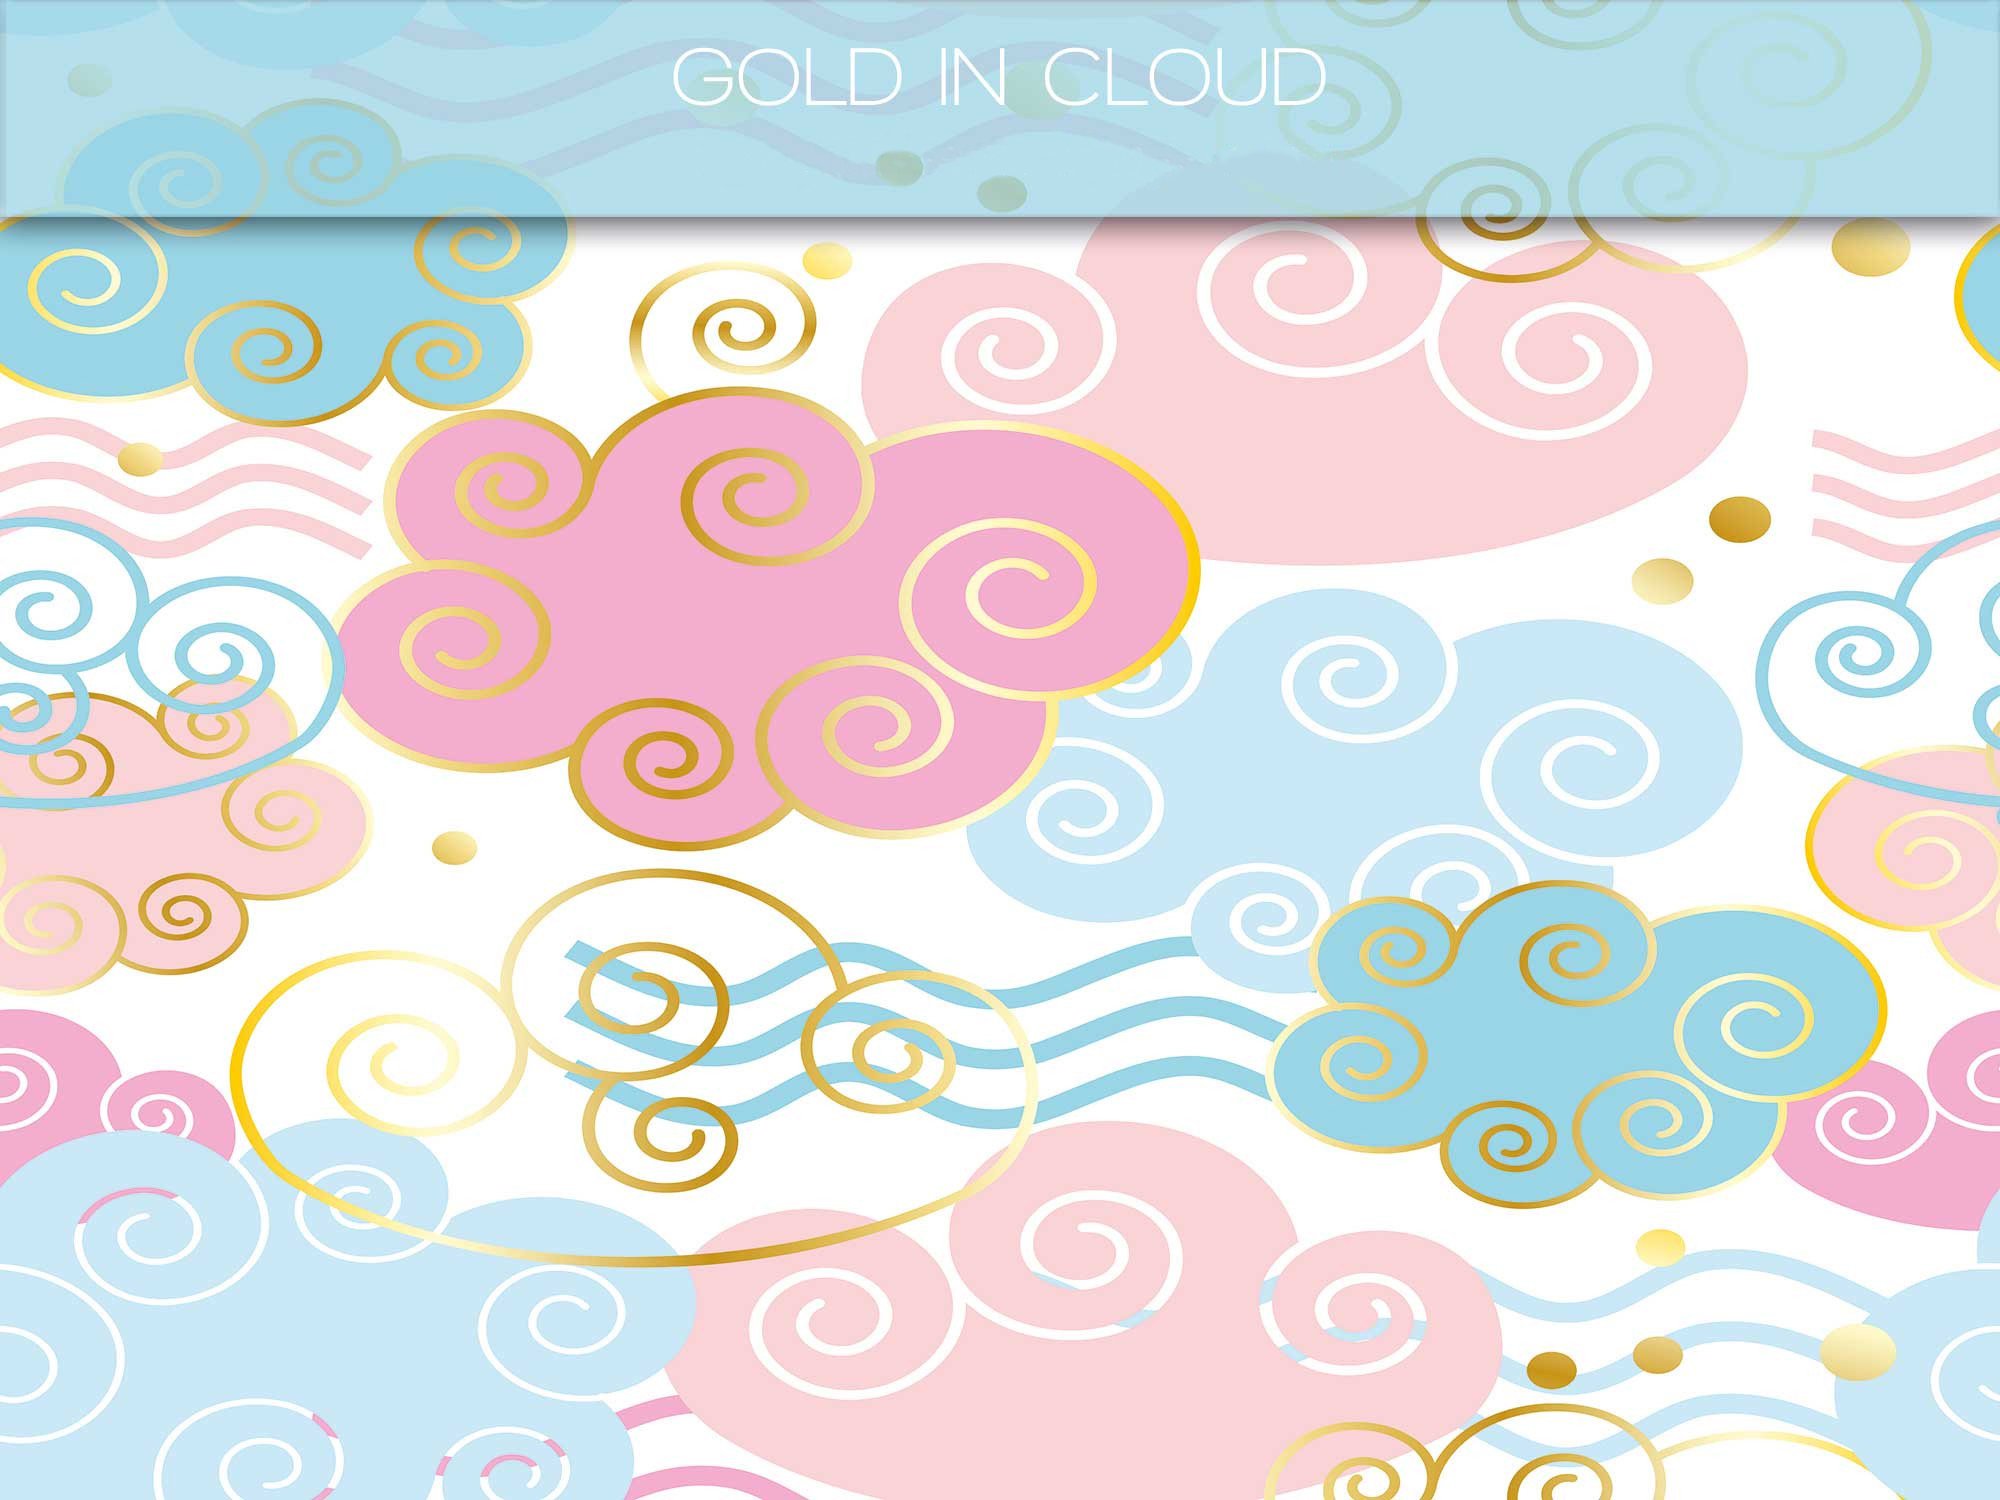 26 Gold-in-cloud